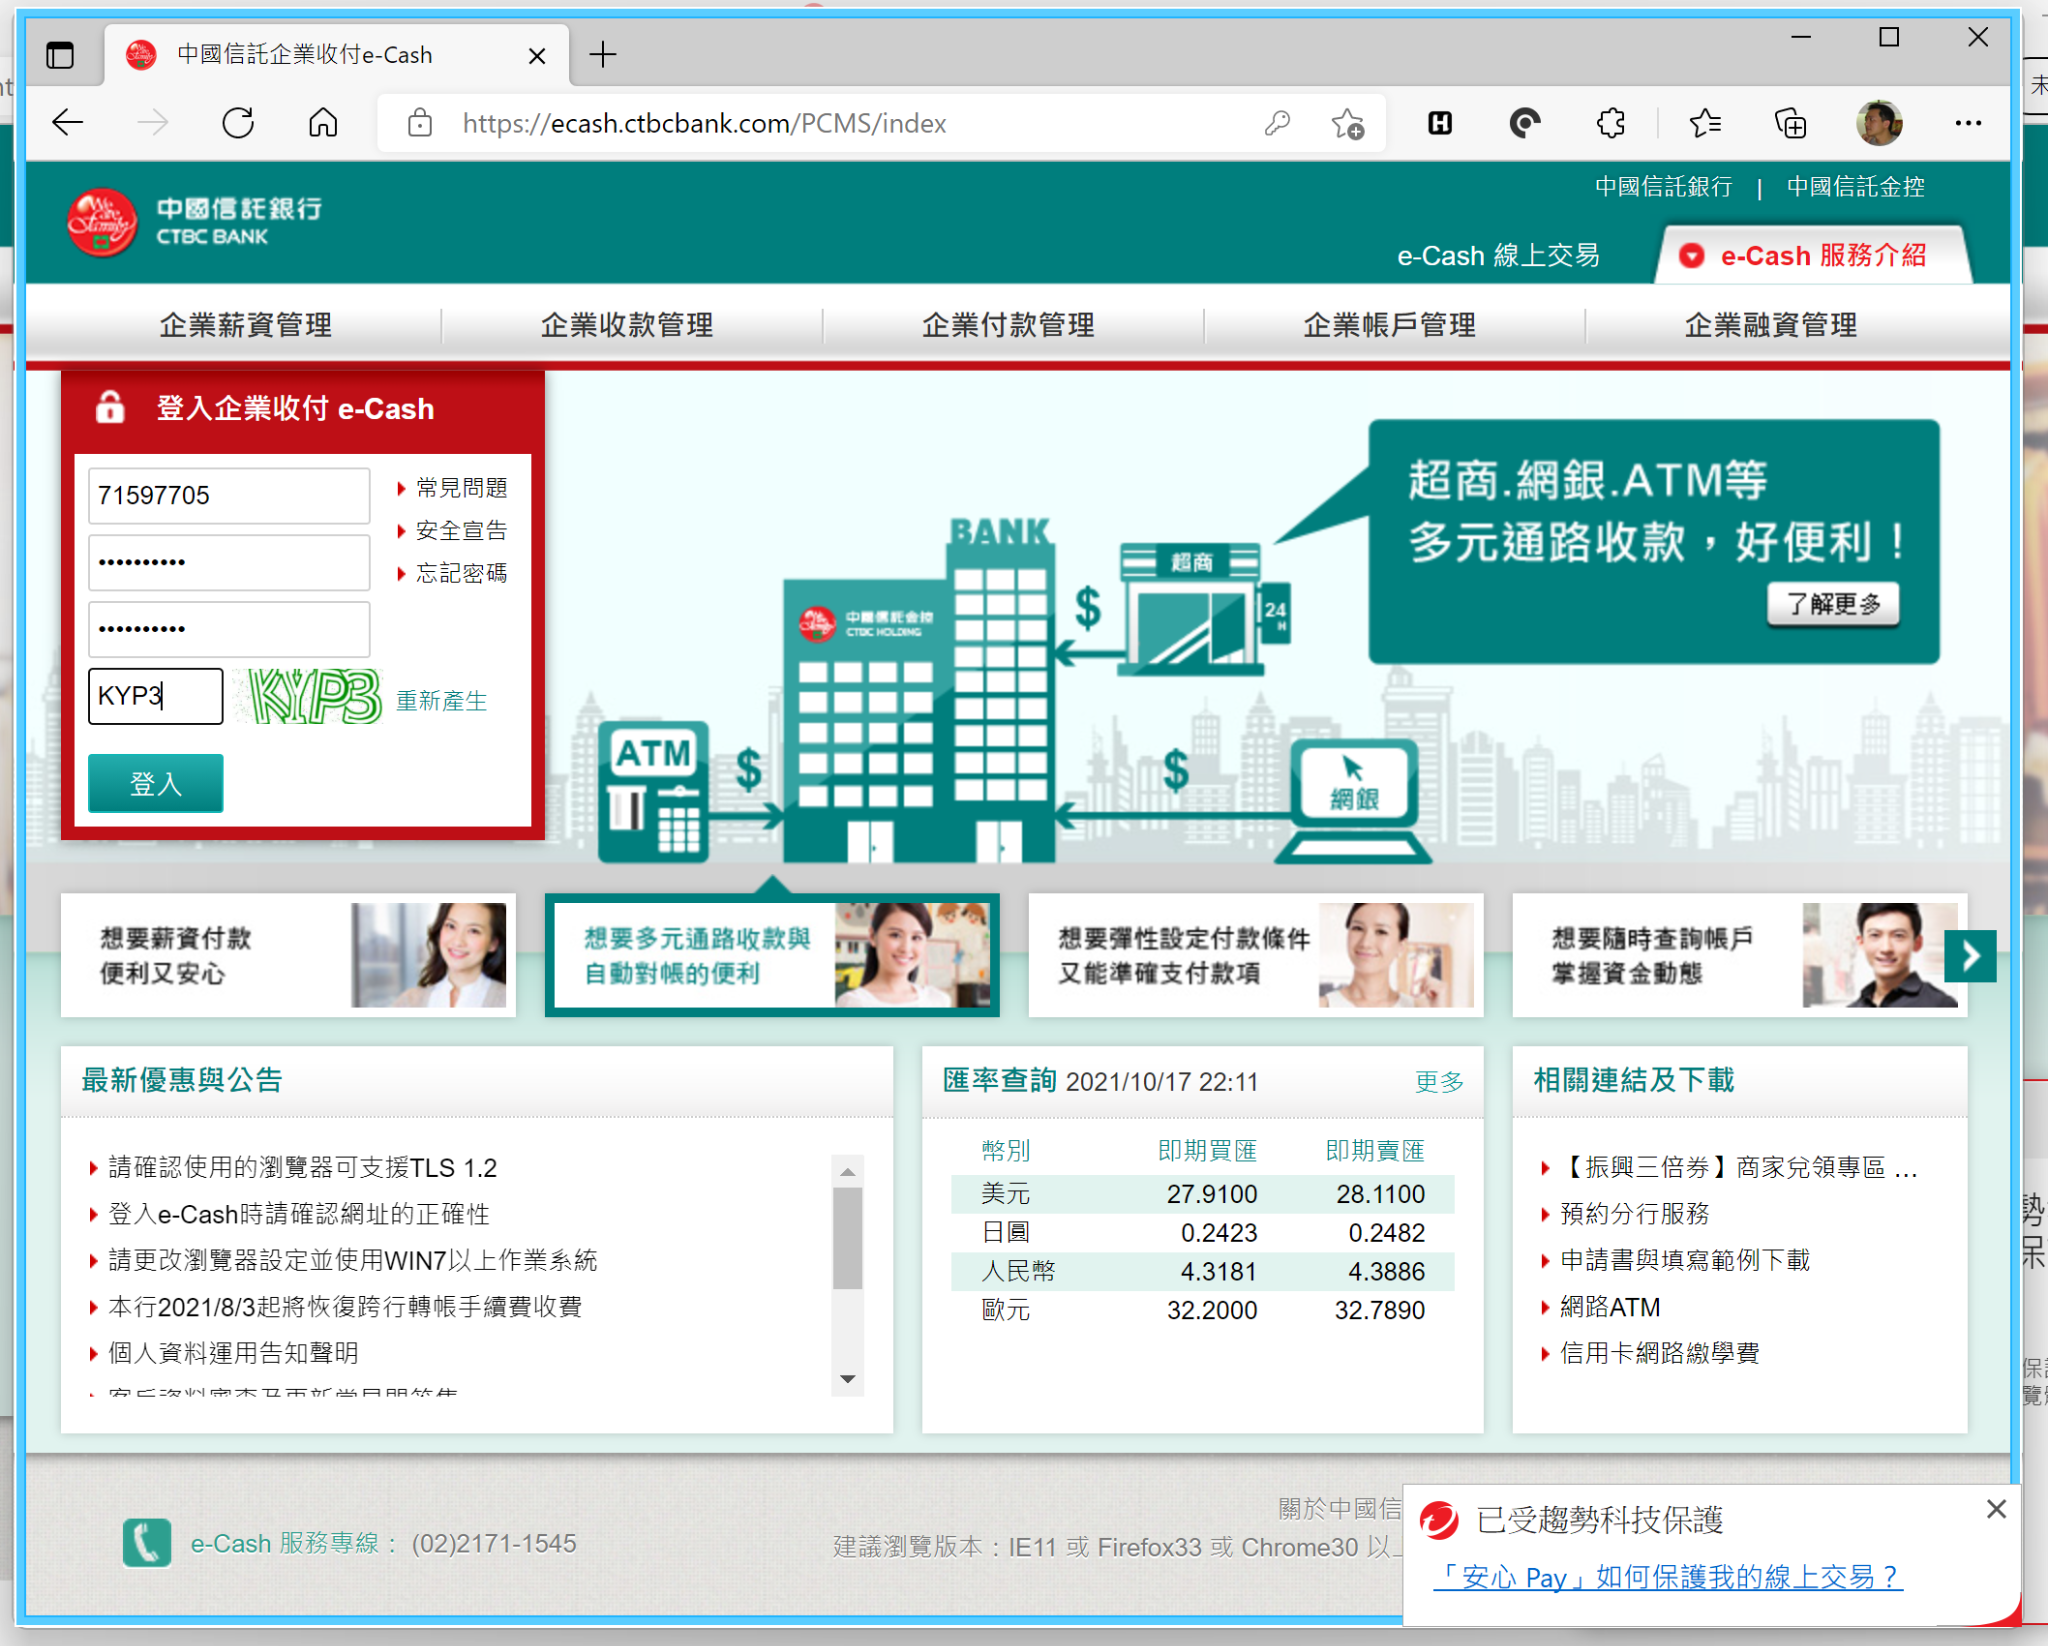 照片中提到了中國信託企業收付e-Cash、https://ecash.ctbcbank.com/PCMS/index、中國信託銀行 | 中國信託金控，跟CTBC銀行有關，包含了網頁、計算機程序、在線廣告、網頁、線